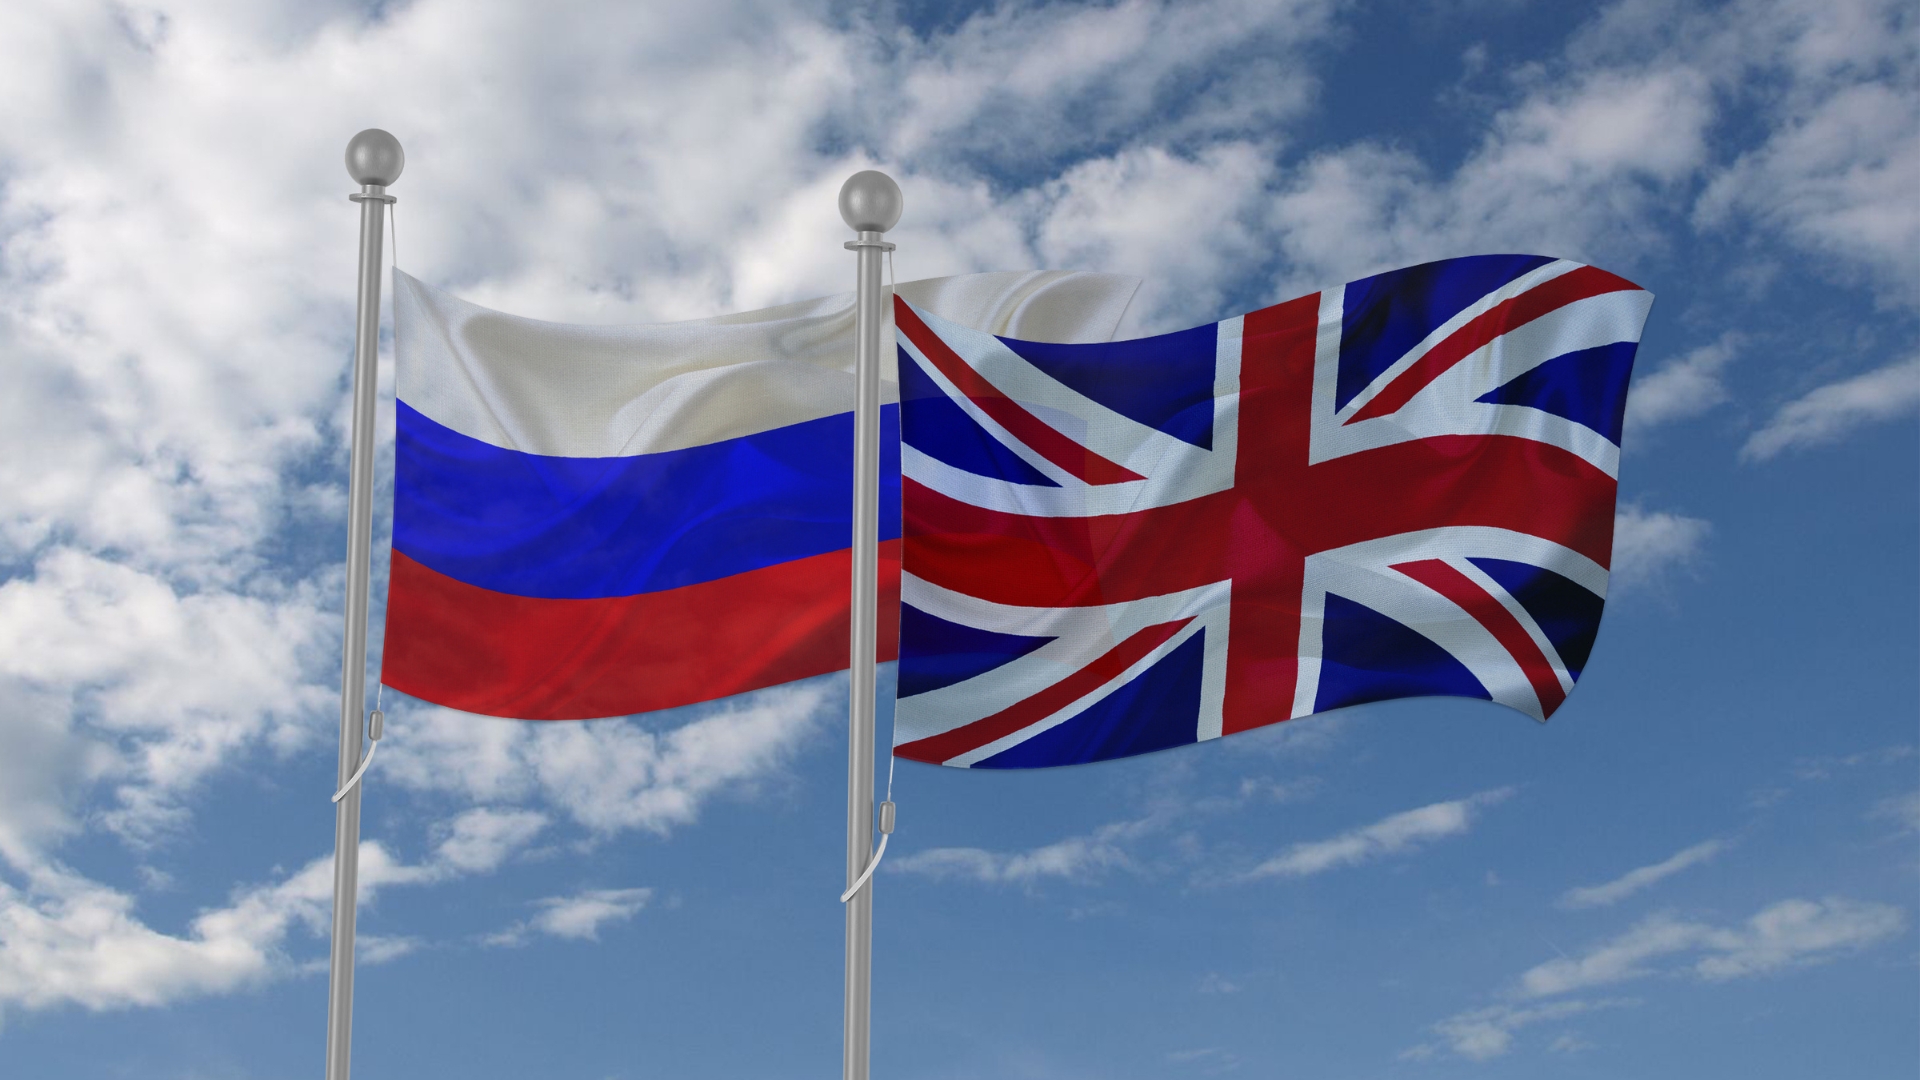 Flamuri i Rusisë dhe i Britanisë së Madhe. Foto: Btgbtg në Canva